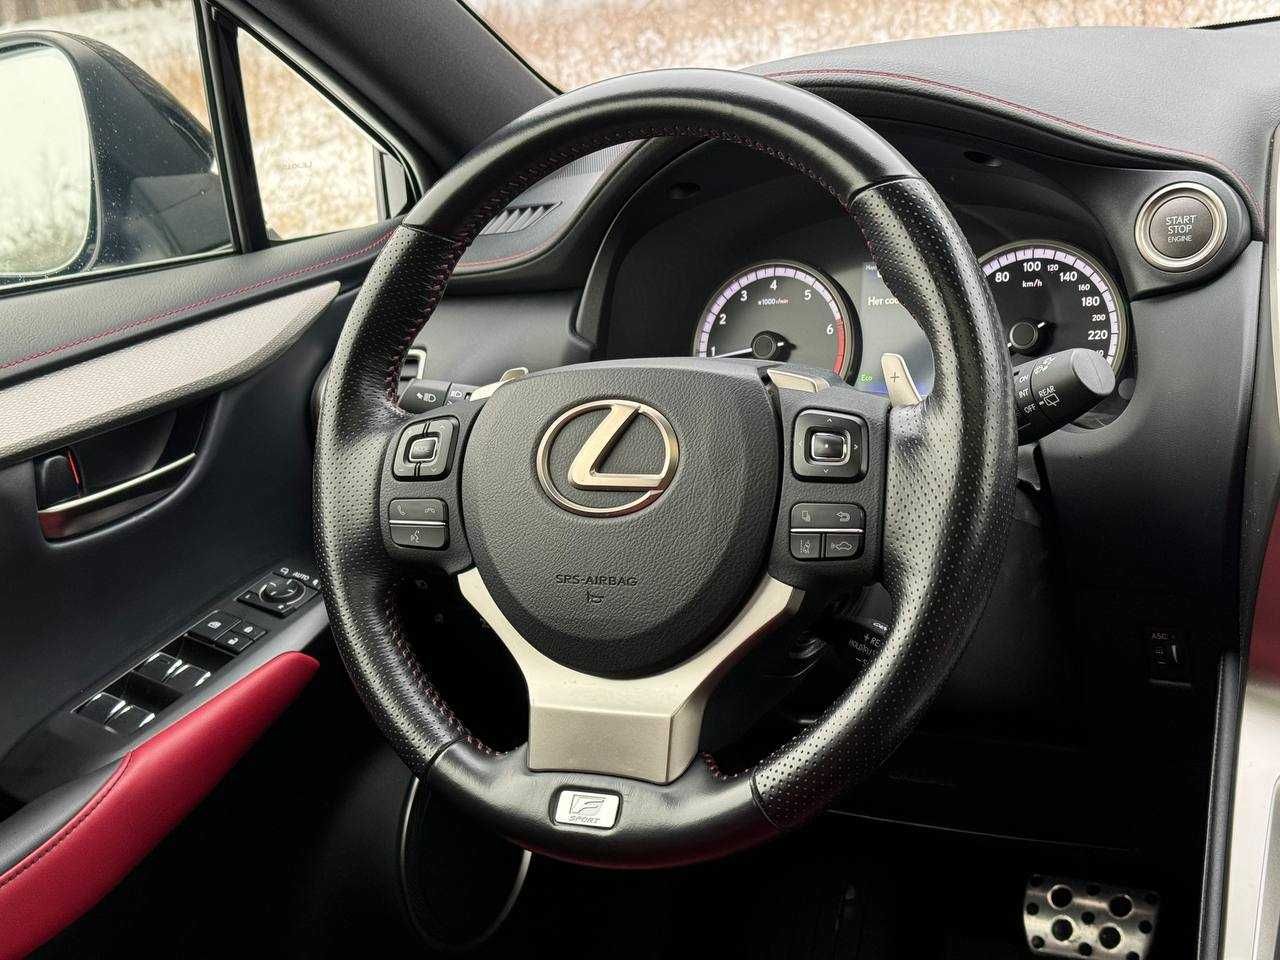 Lexus NX 300 F-sport, 2020 рік, 2.0 бензин, автомат, повний привід